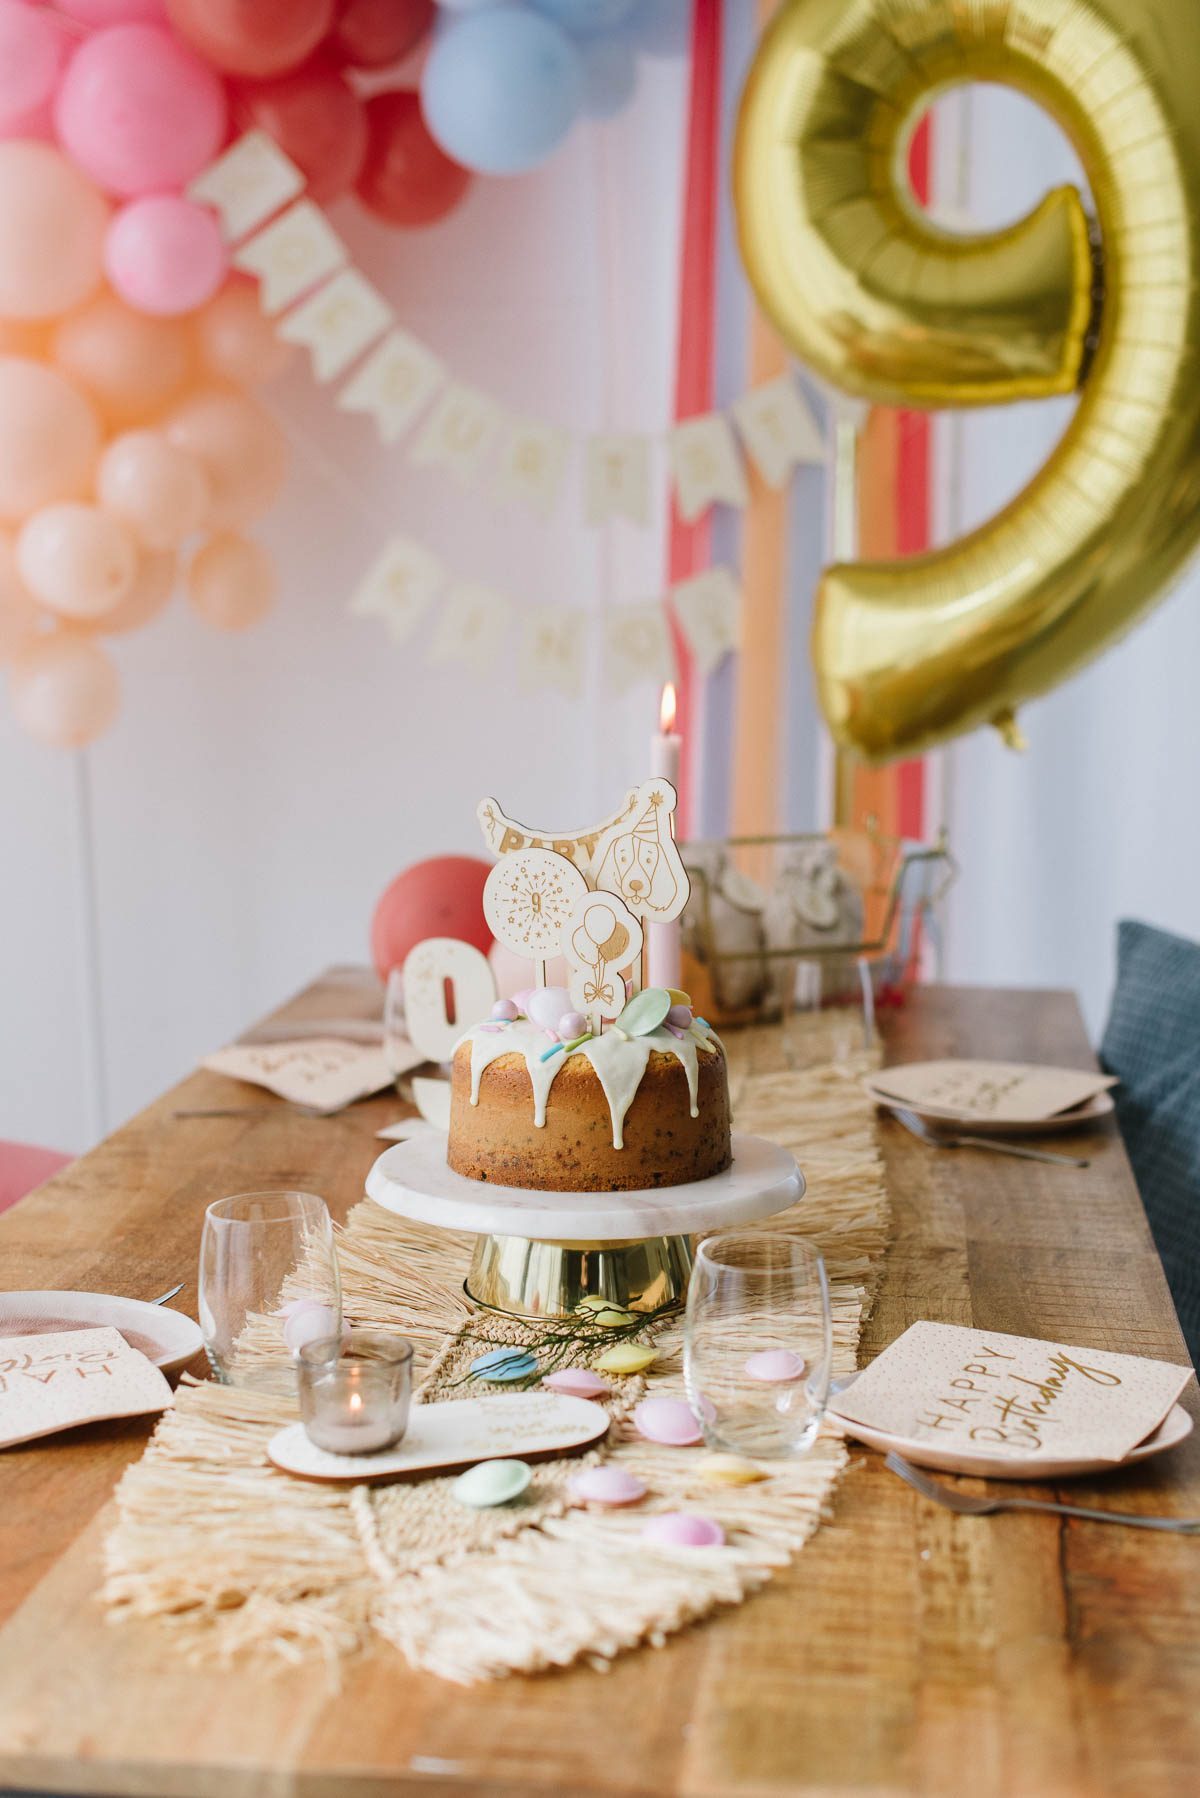 Gedeckter Tisch zum 9. Geburtstag mit Torte und Ballongirlande